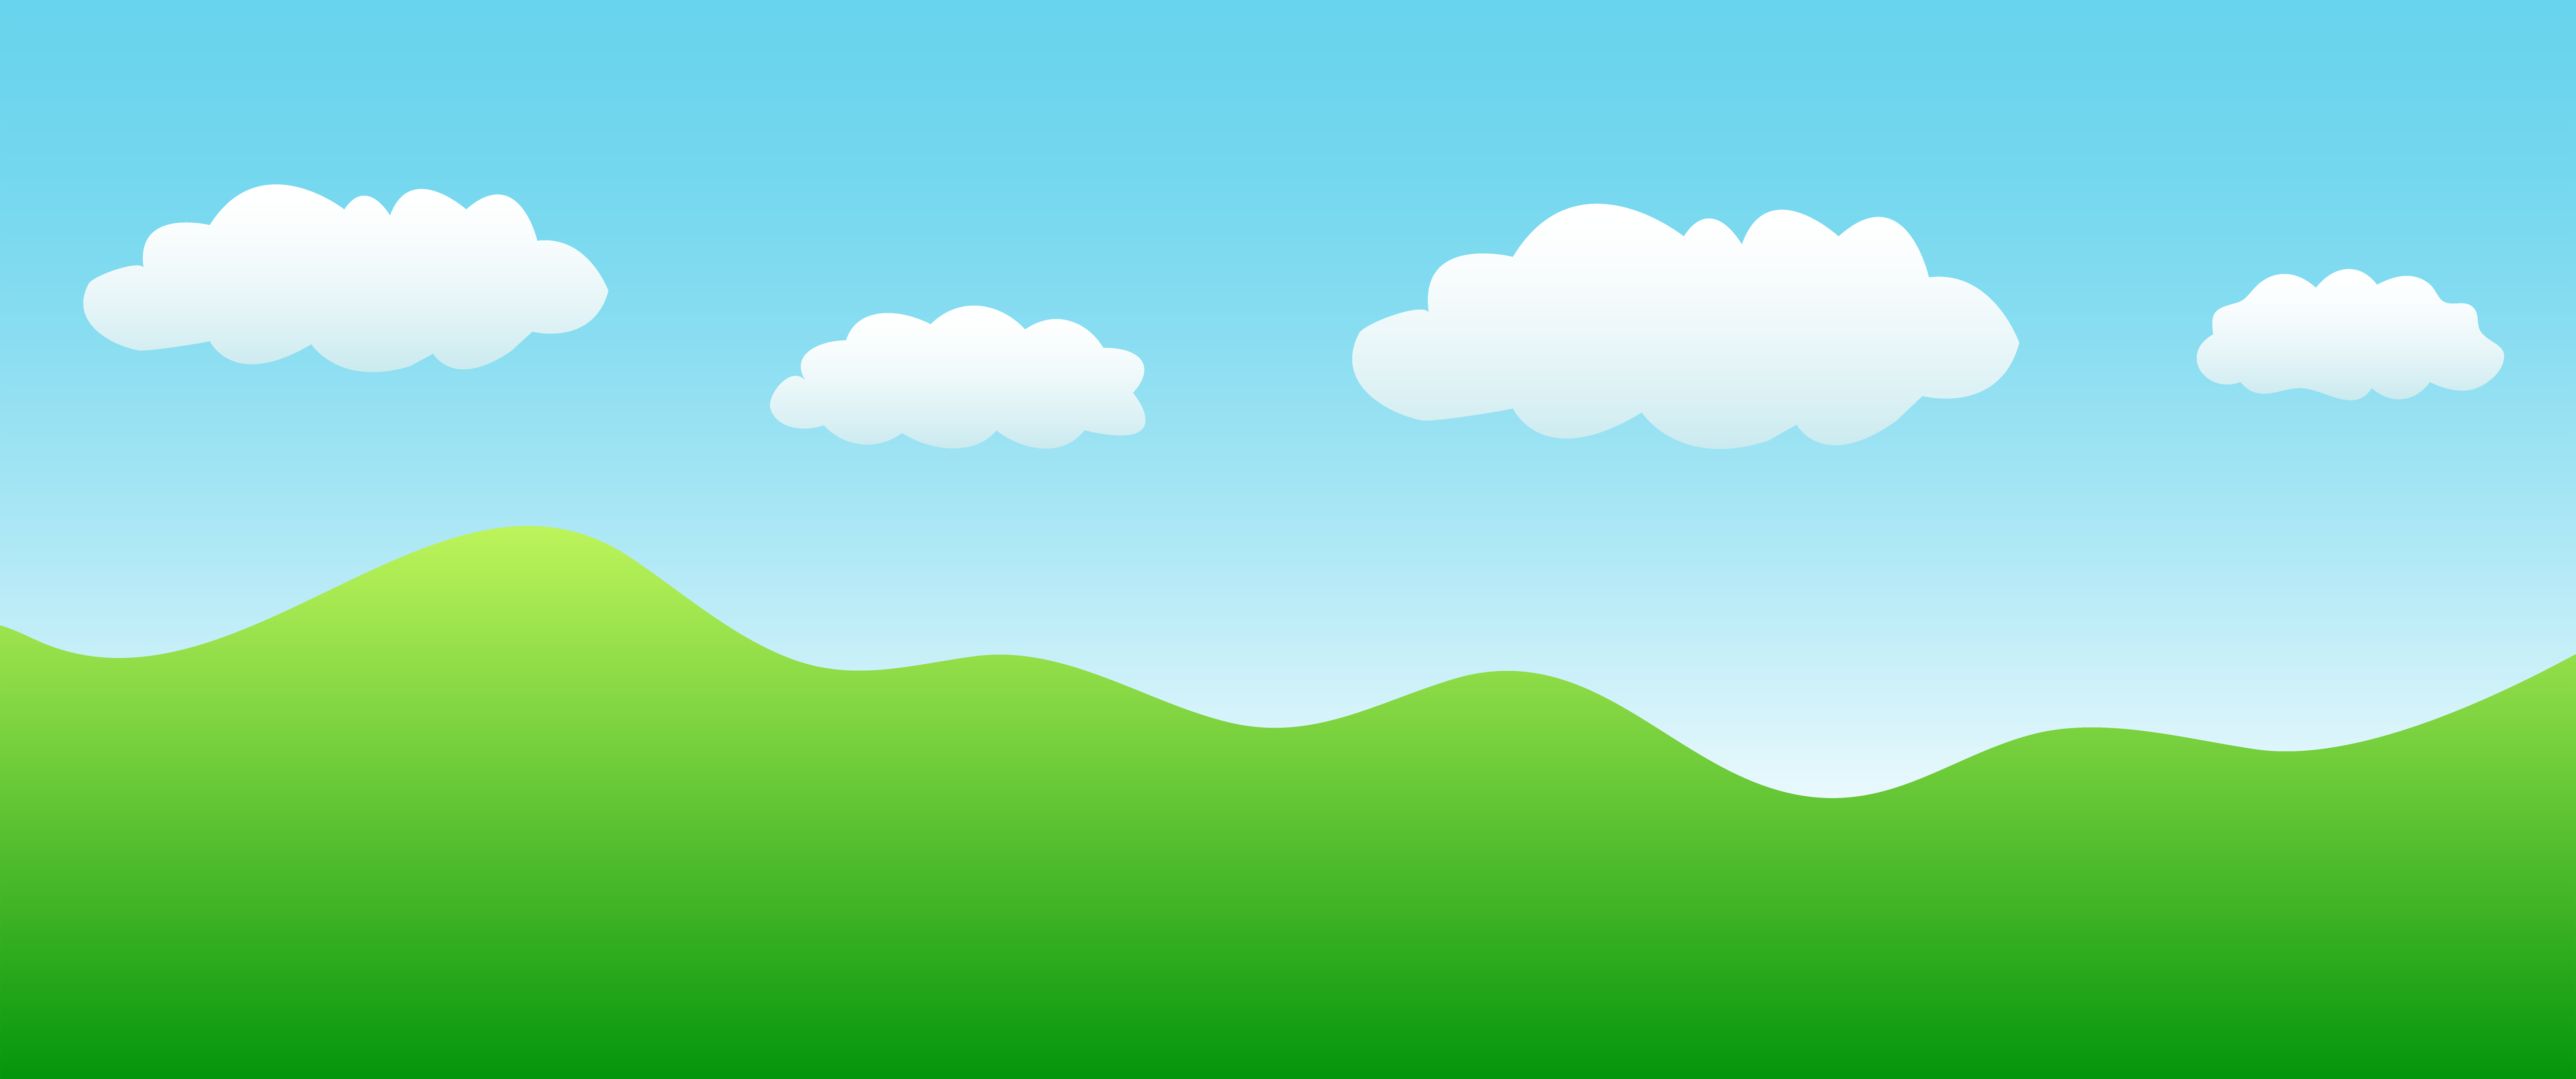 Download miễn phí 500 Background sky clipart chất lượng cao nhất